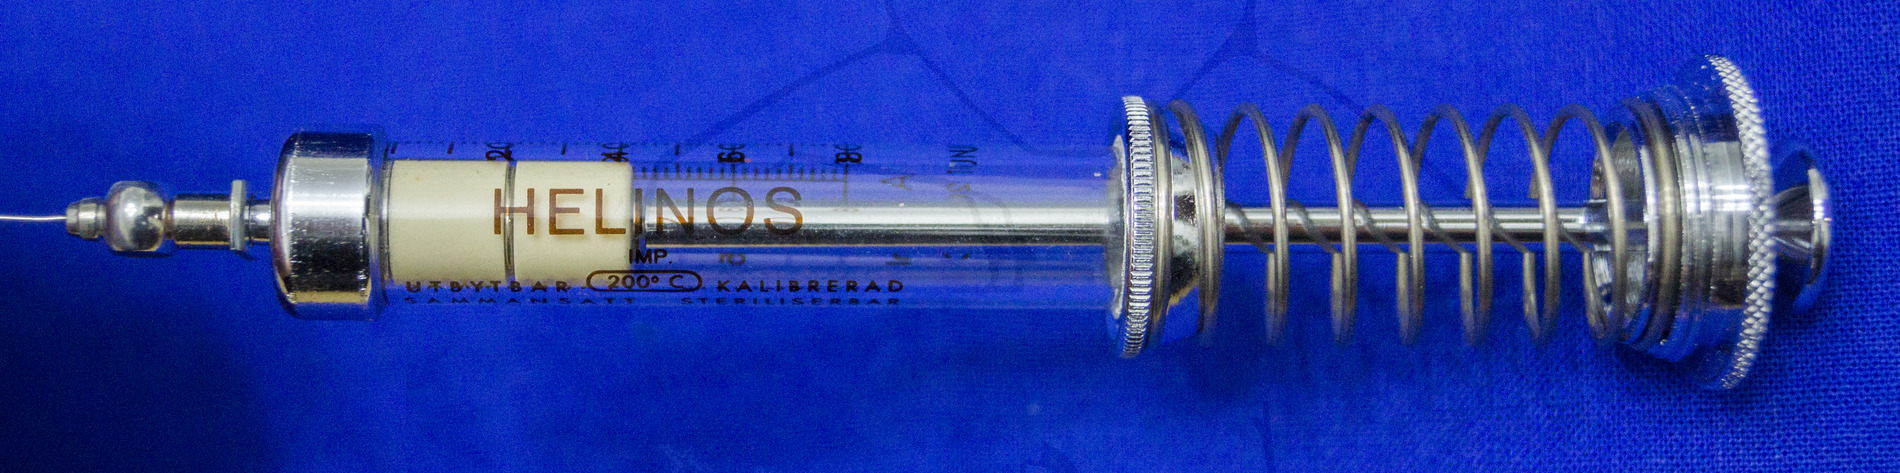 Insulininjektor "Helinos", Mitte der 1950'er Jahre, Stempel in den Zylinder eingesetzt